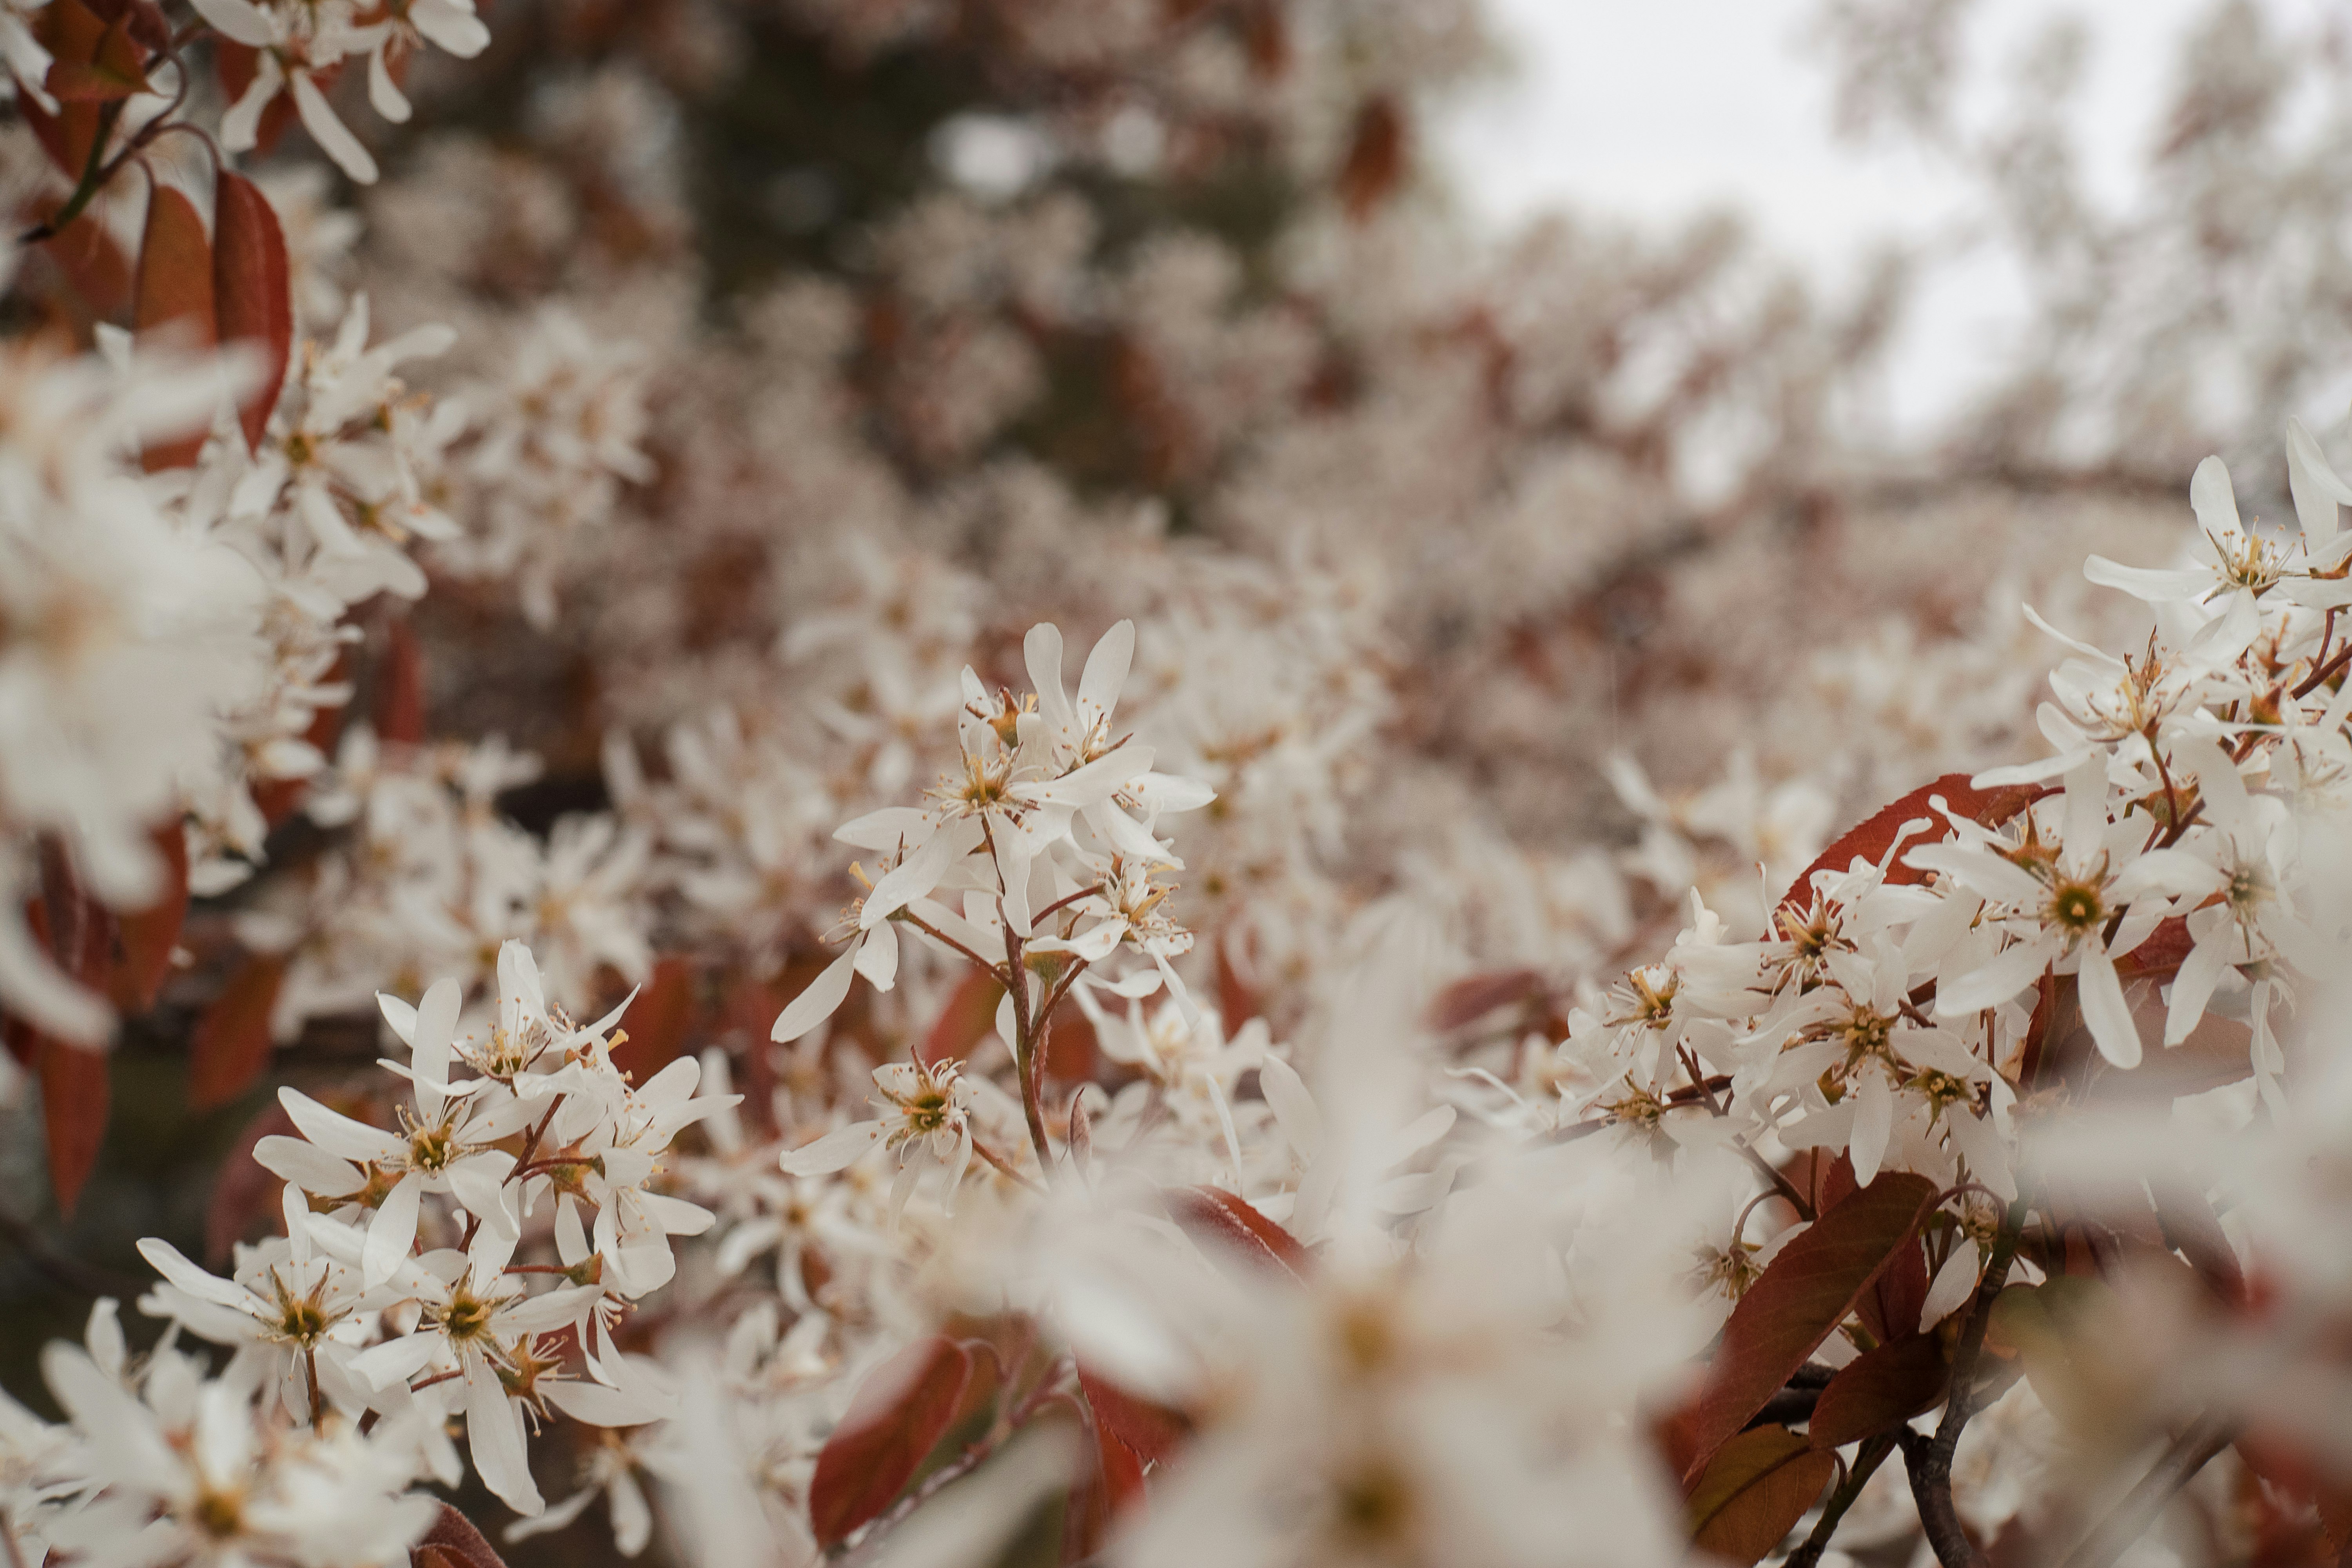 white flowers in tilt shift lens